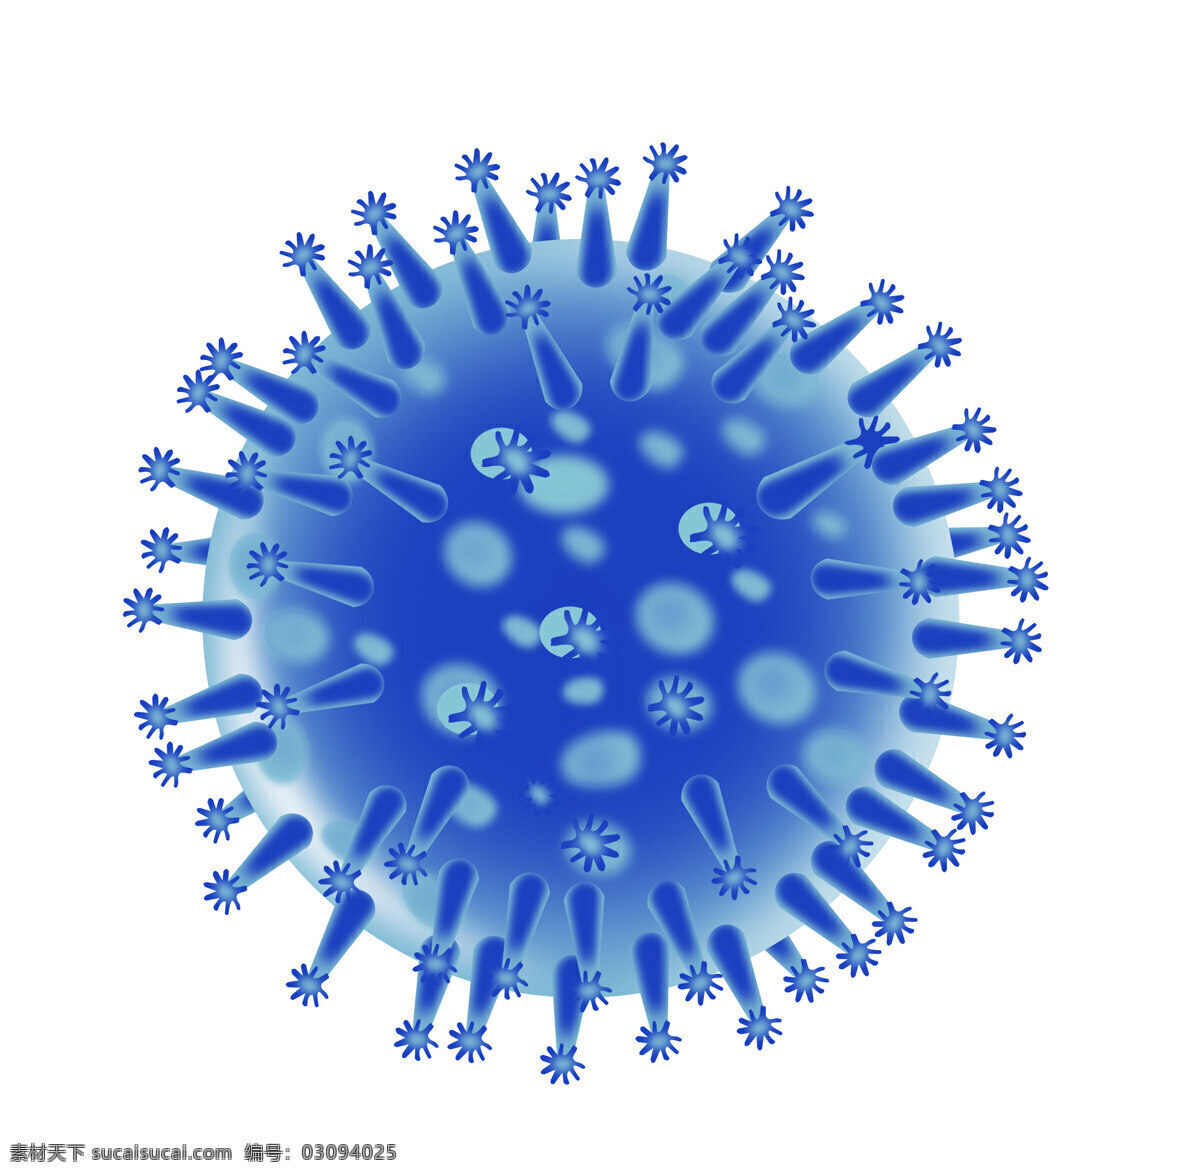 流感 病毒 结构 流感病毒结构